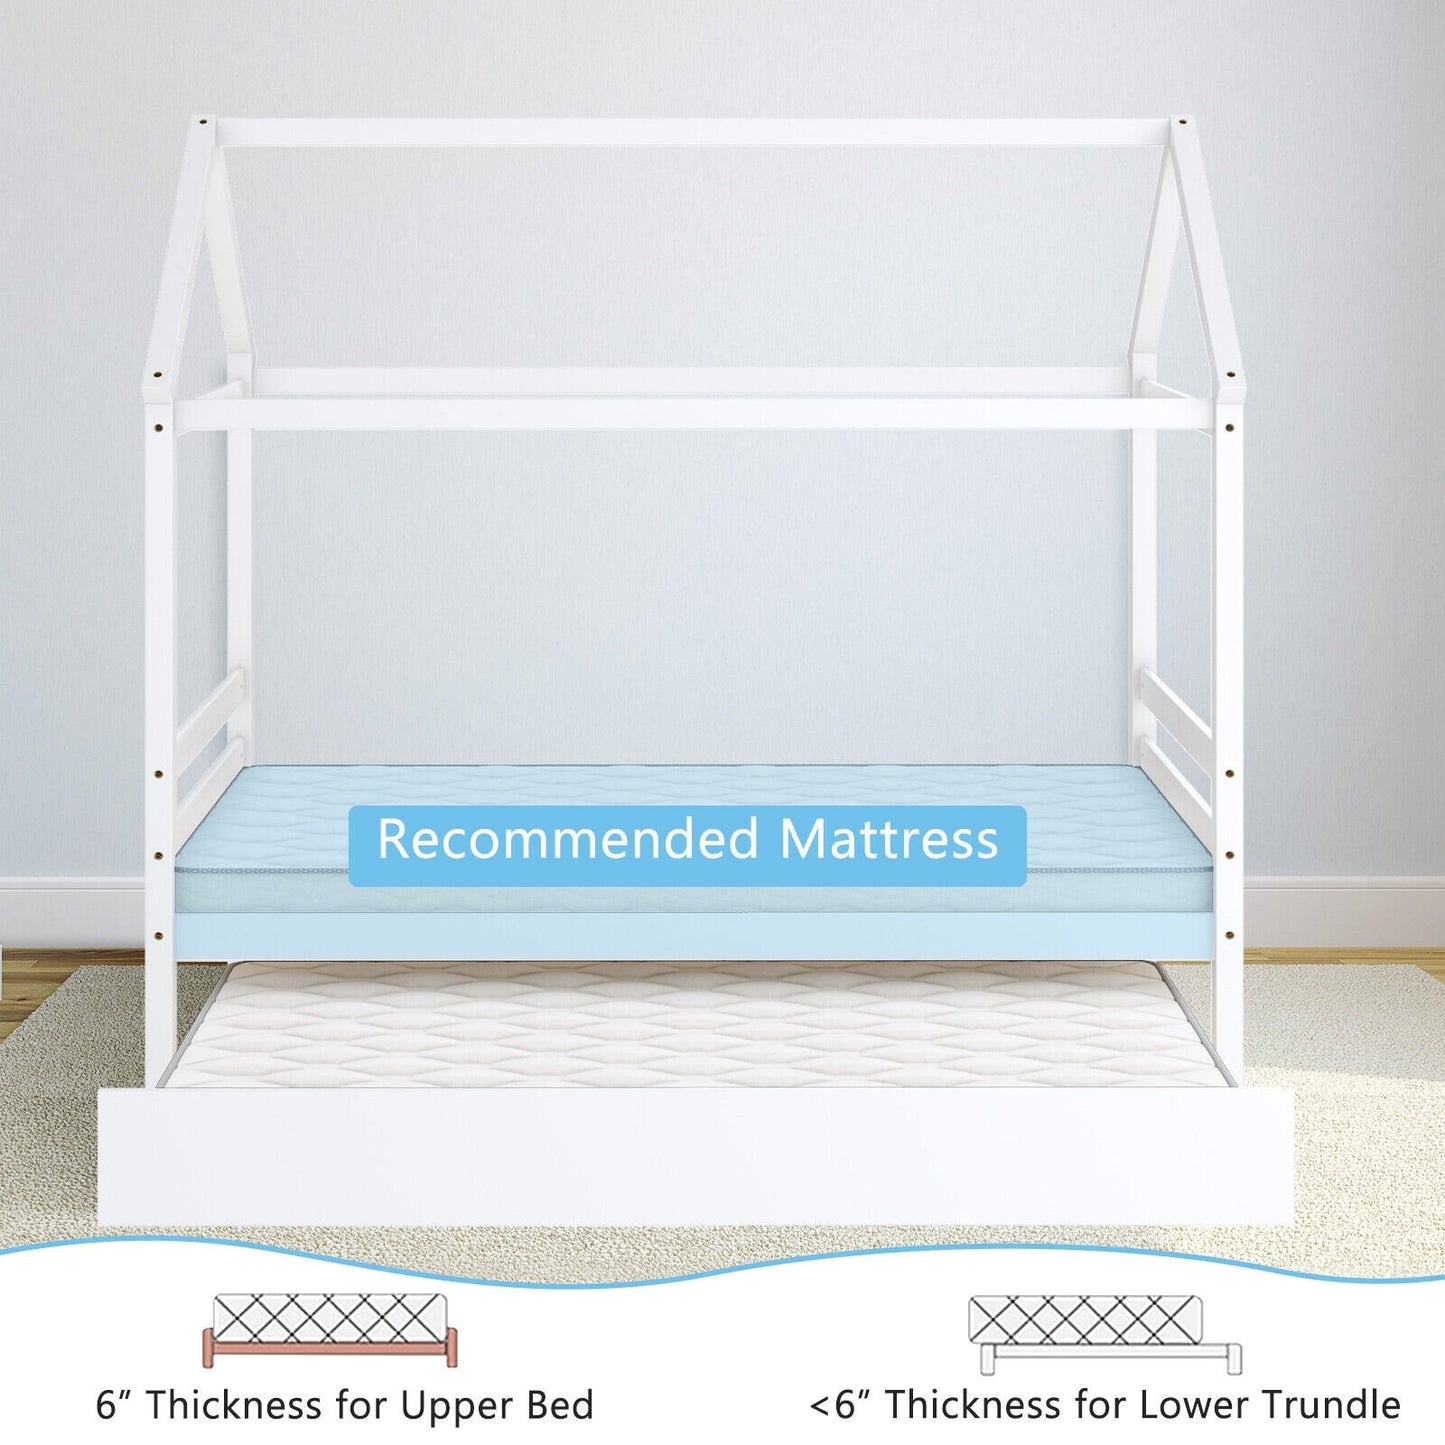 Kids Platform Bed Frame with Roof for Bedroom, White